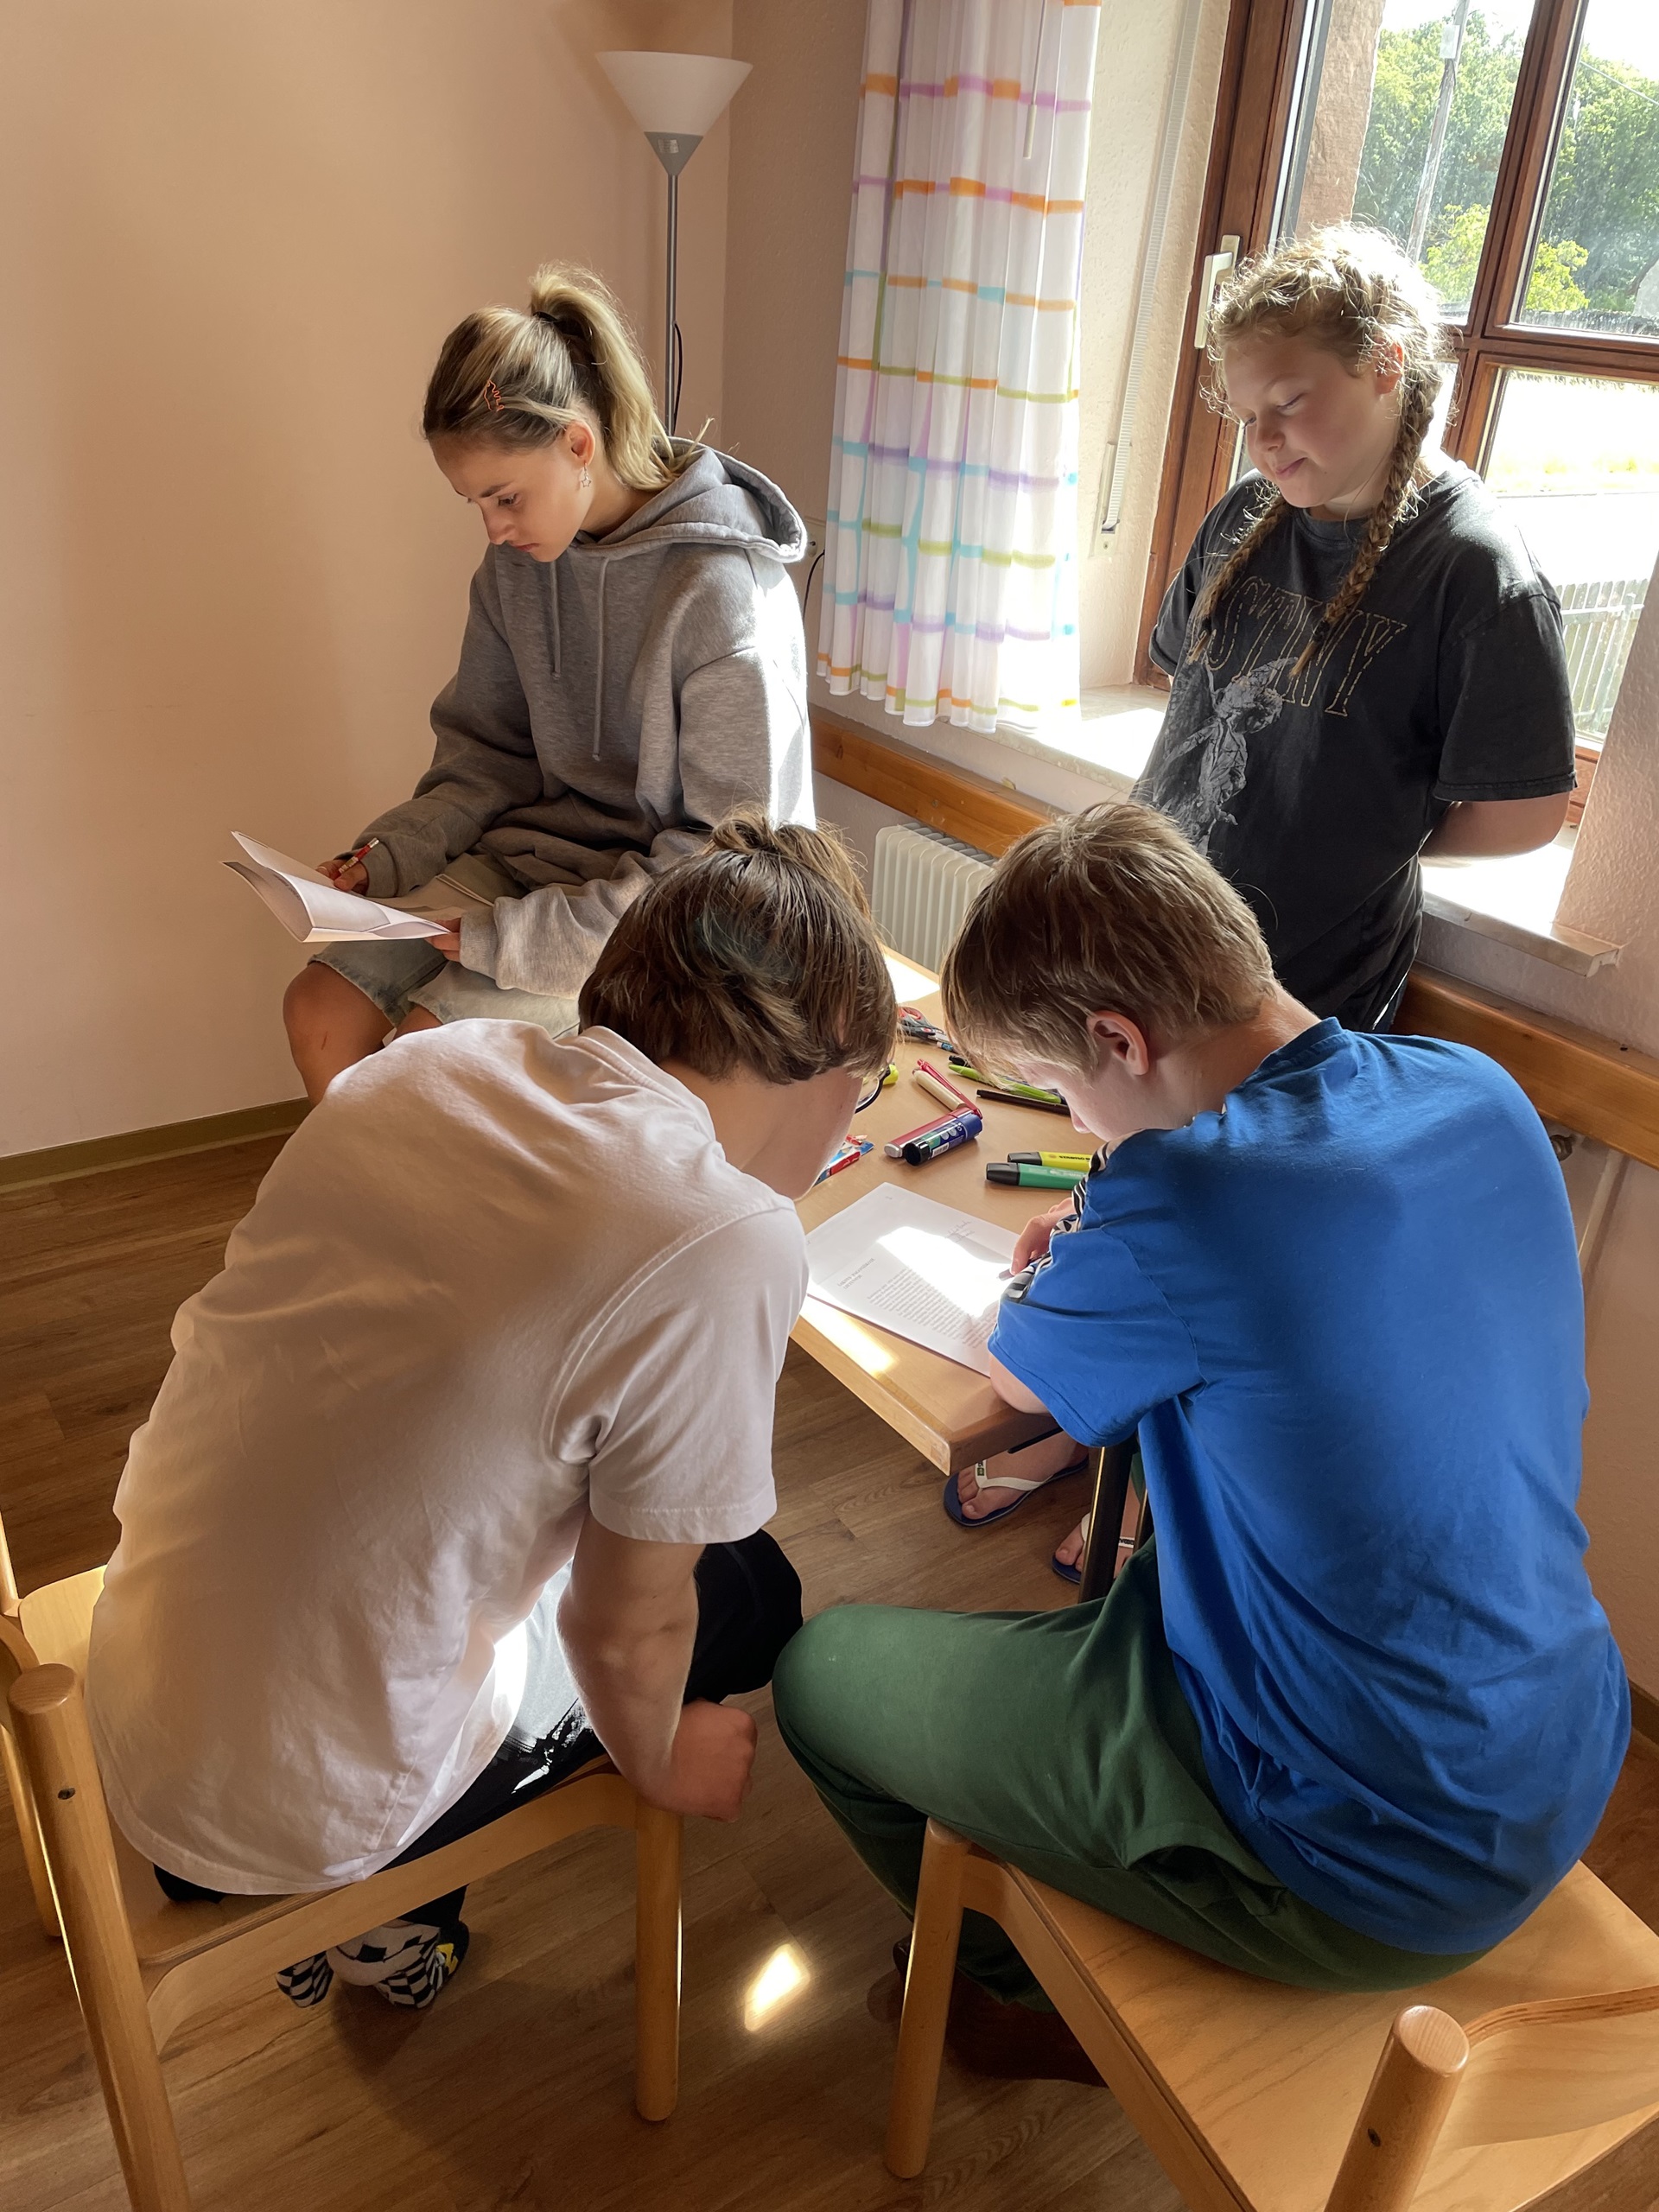 Katalikiško jaunimo grupės stovykla Odenvalde (Foto: D. Kriščiūnienė)